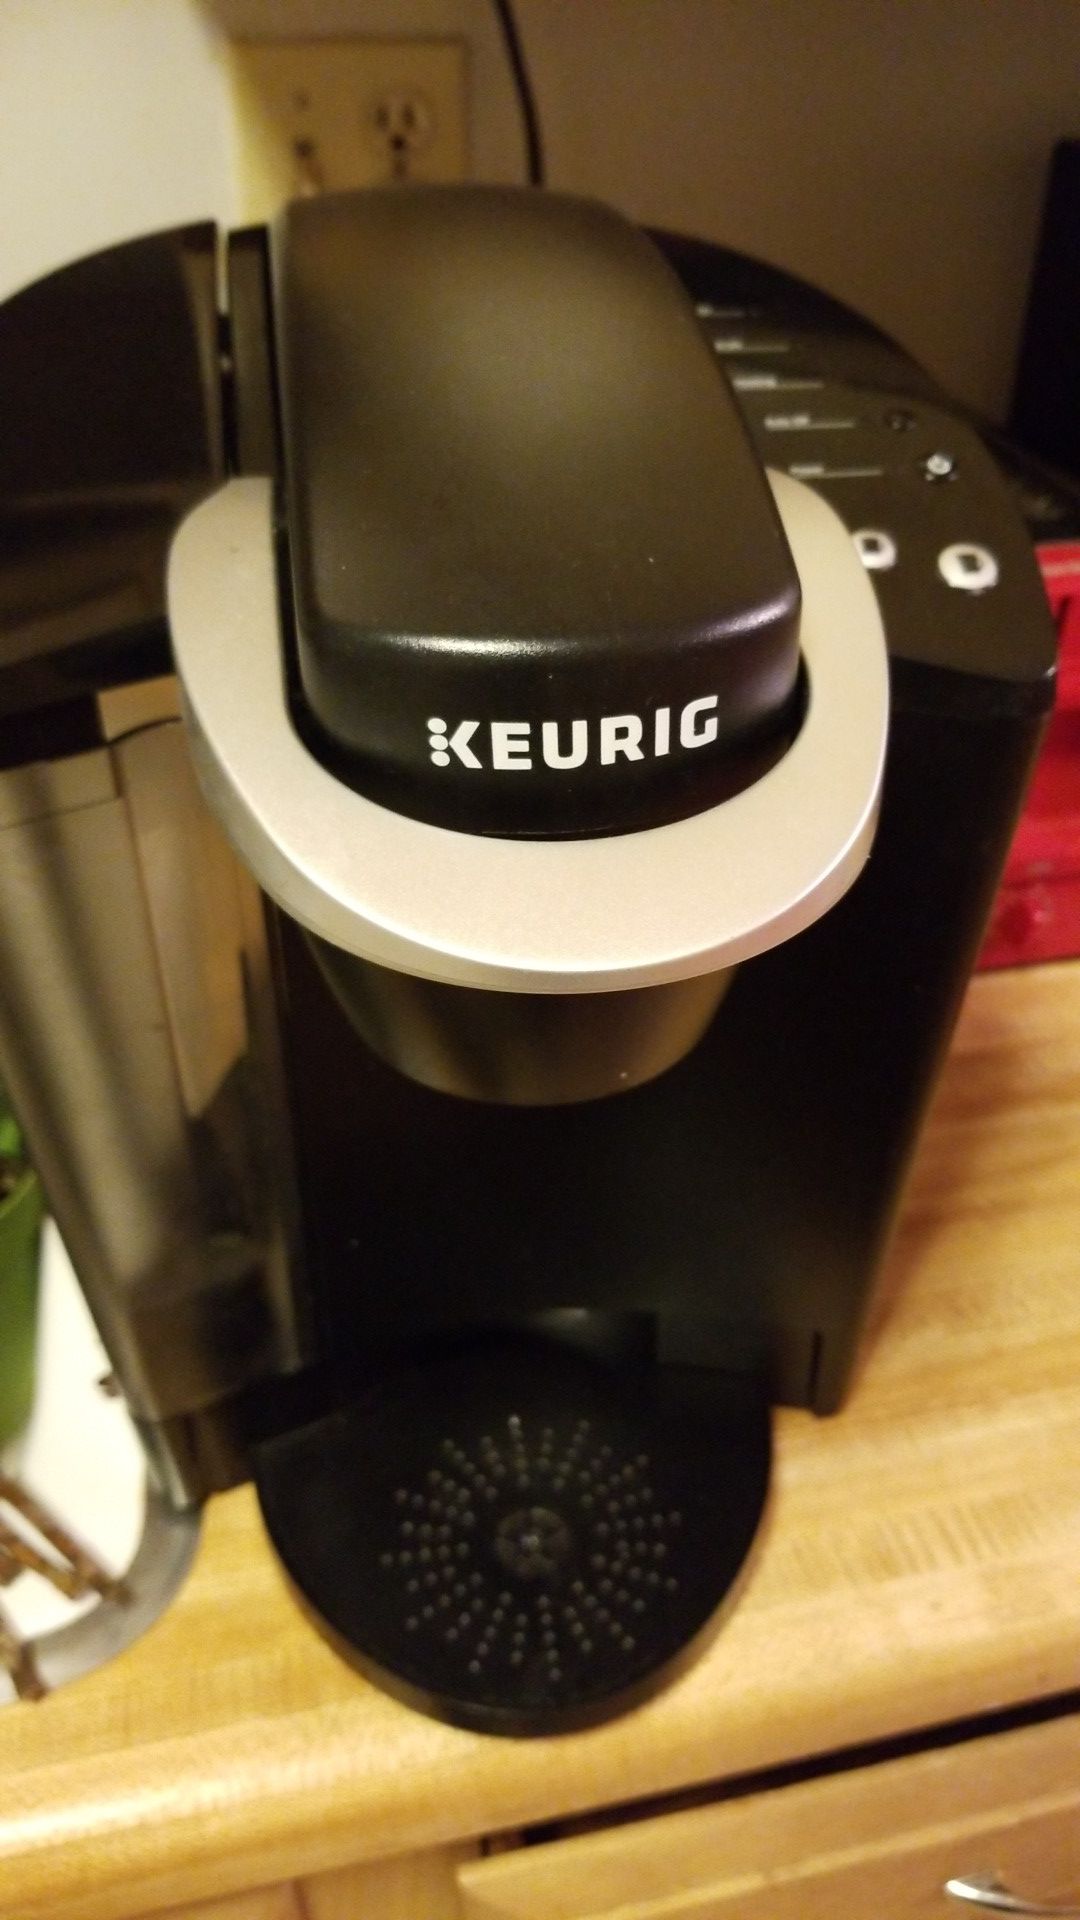 Keurig with Peets Coffee